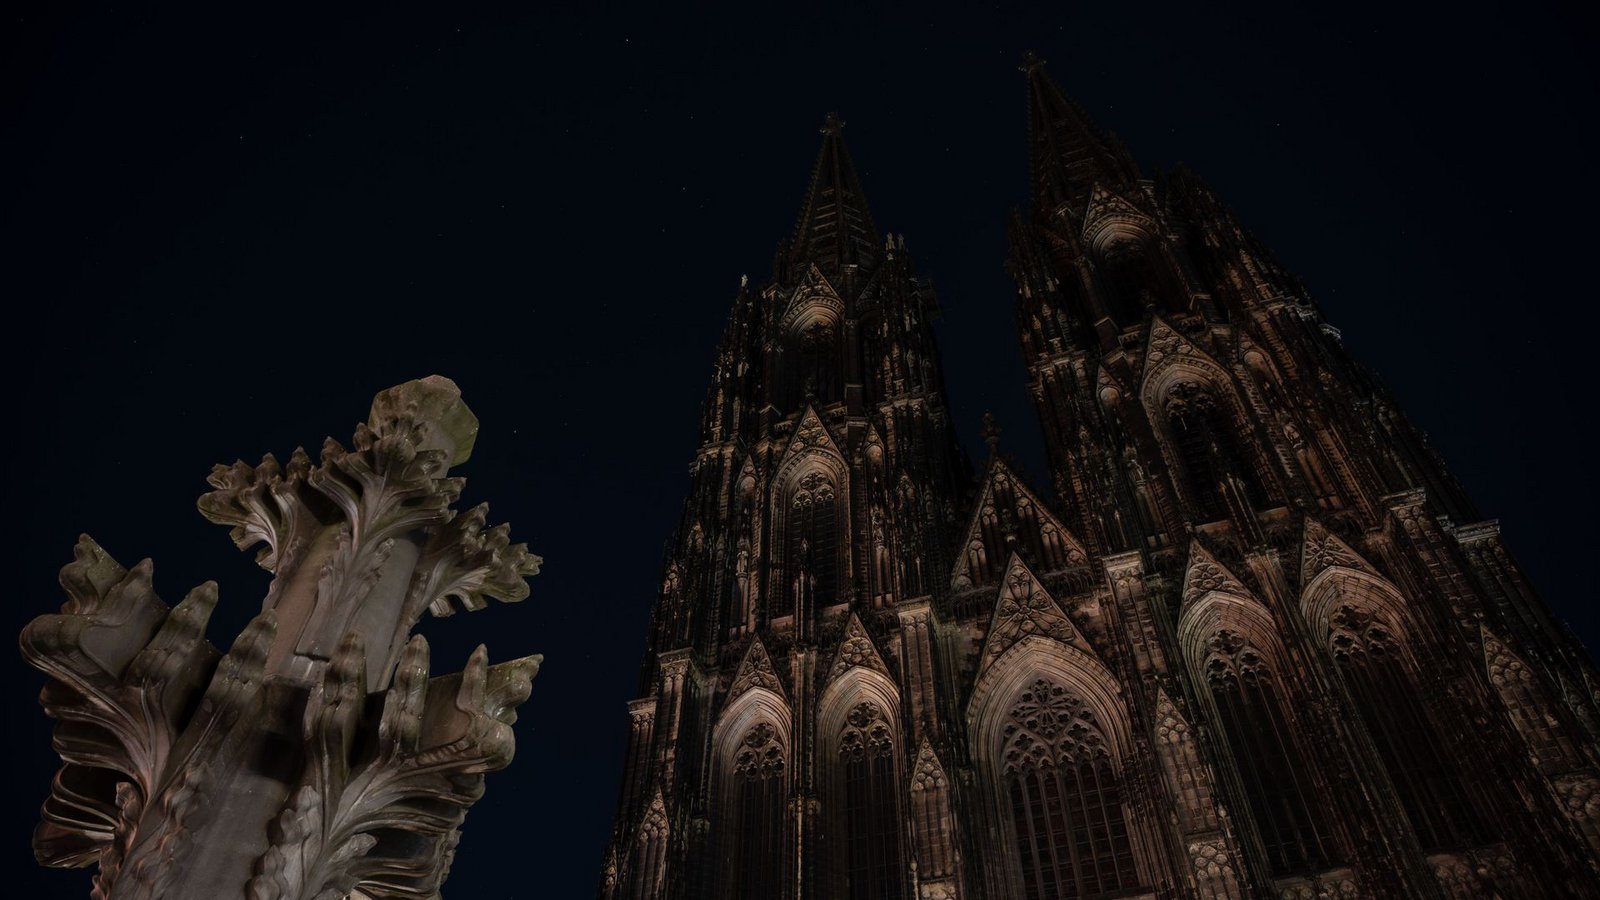 Um in Zeiten des Kriegs in der Ukraine Strom zu sparen, bleibt der Kölner Dom nachts ab sofort dunkel.Foto: Marius Becker/dpa